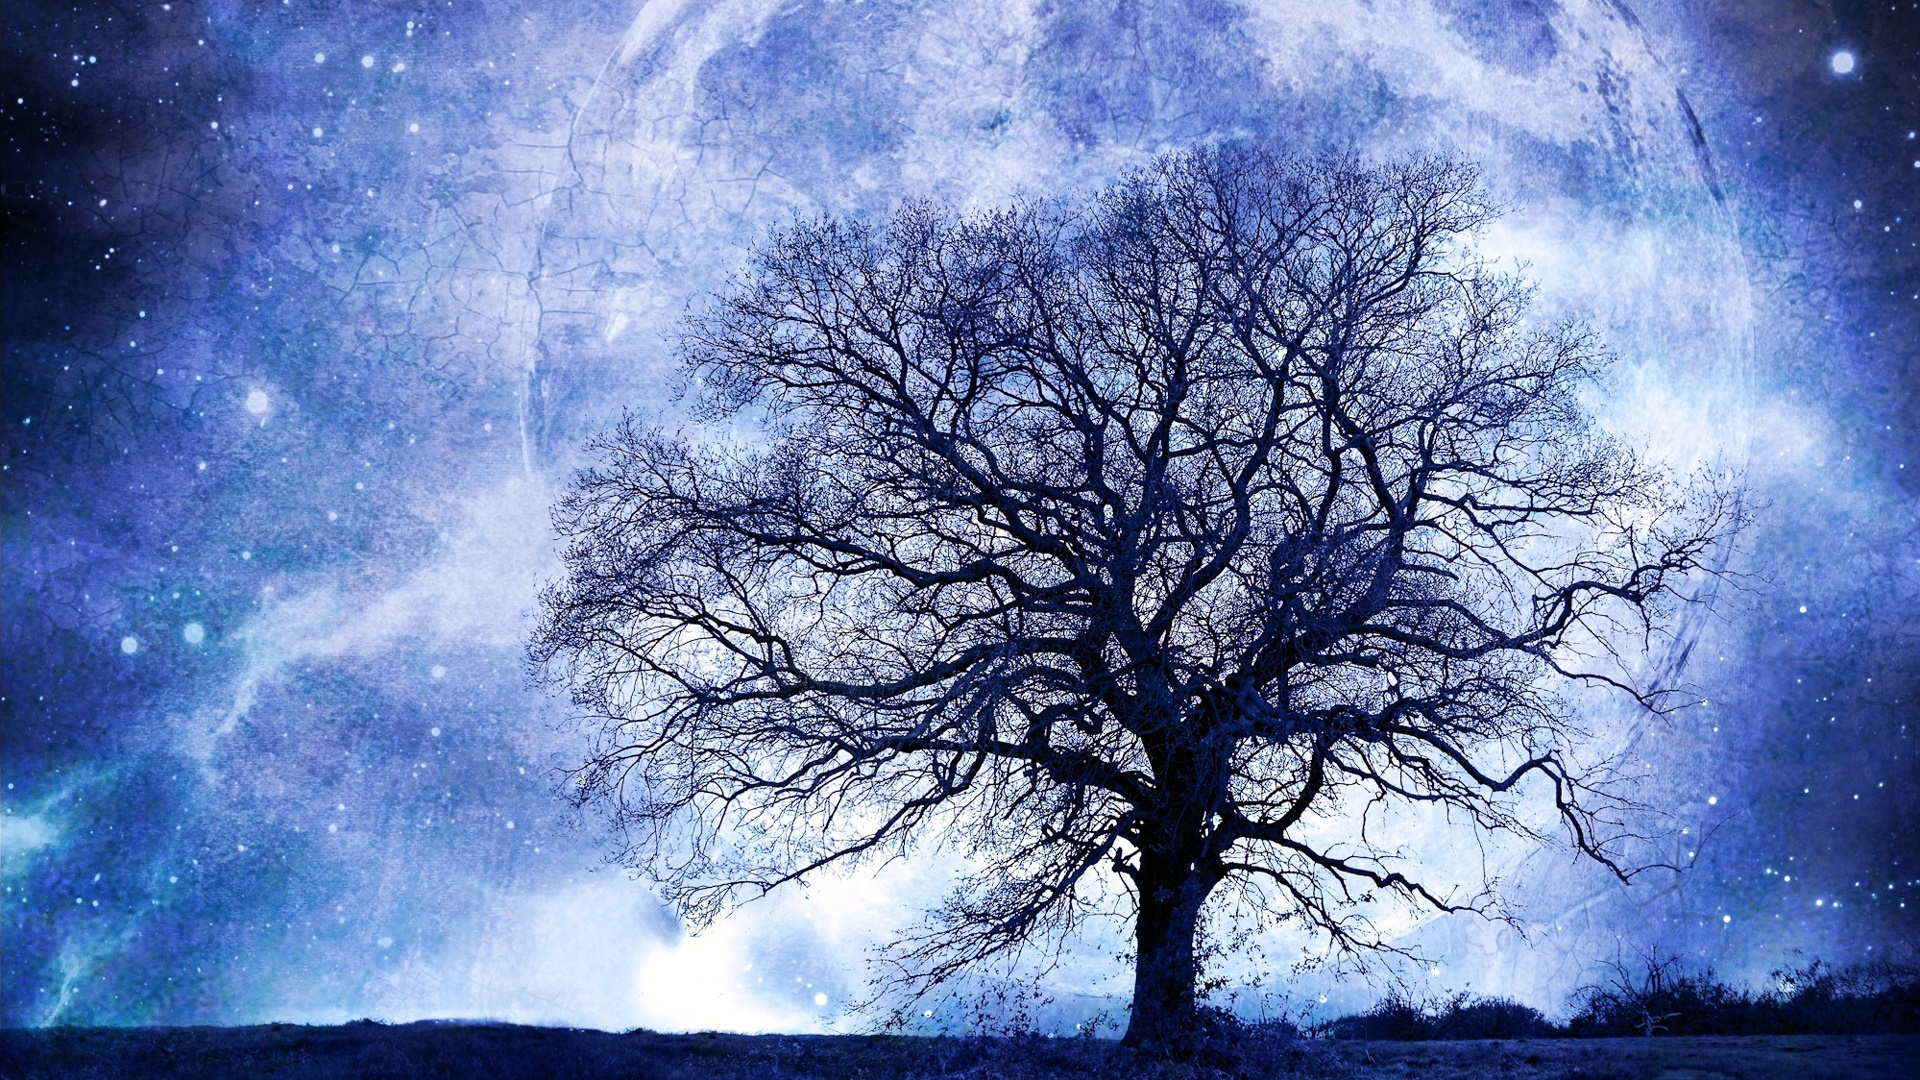 Tree on Blue Moon Night